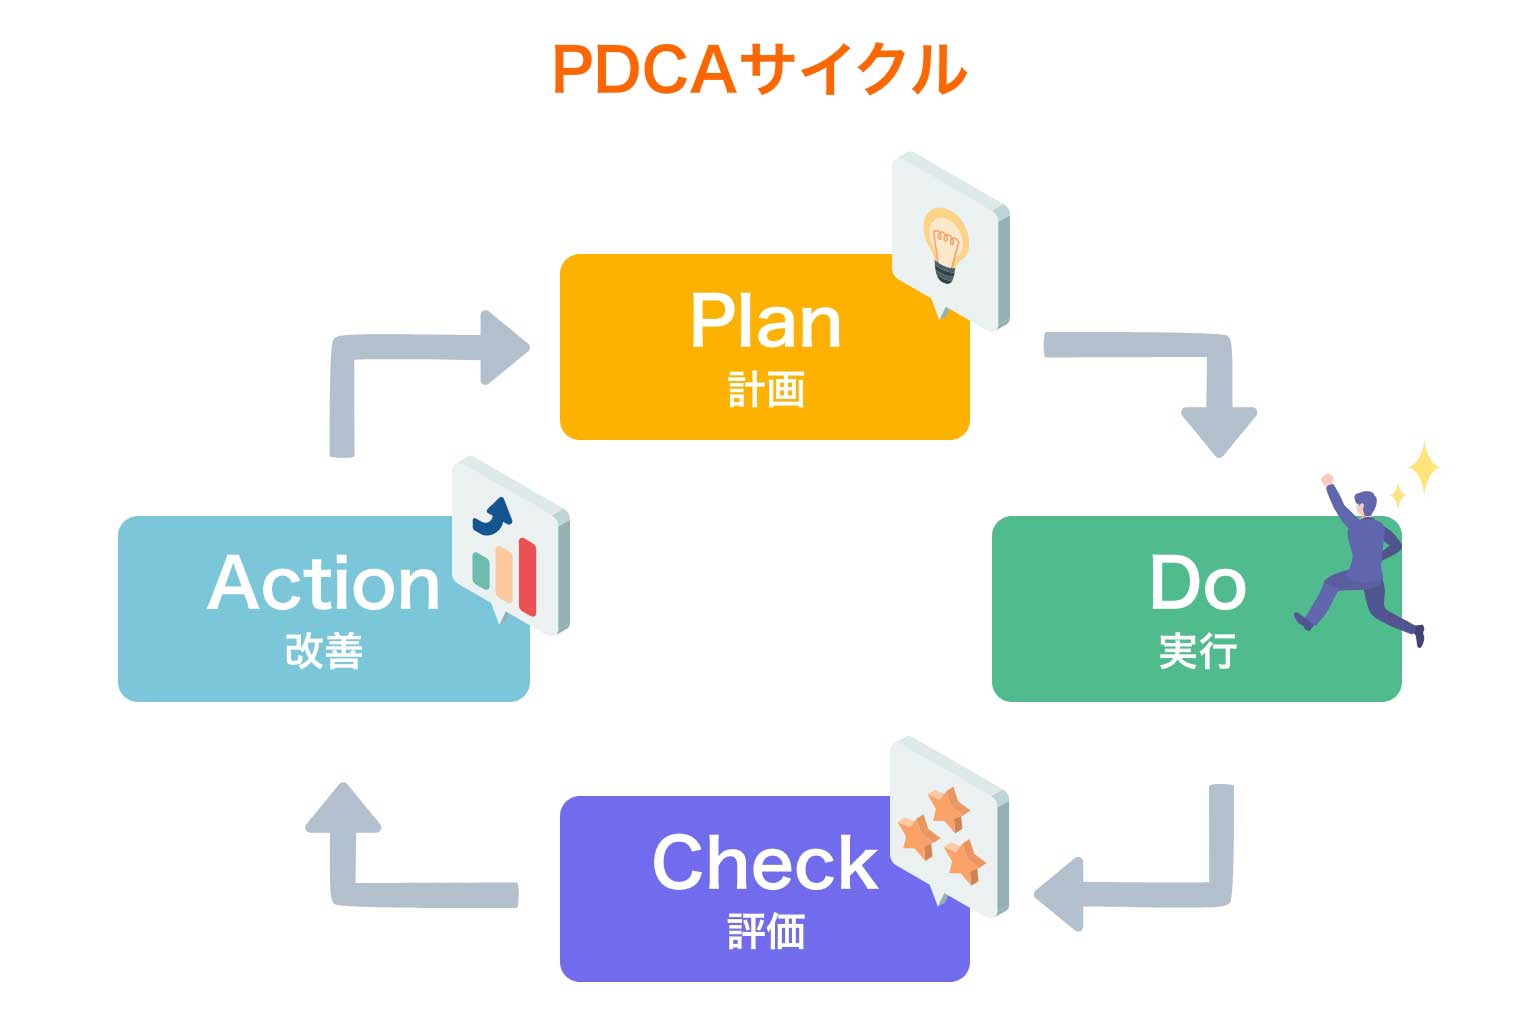 PDCAサイクルは古い？ 効果的に回す方法やメリット、OODAループも解説PDCAサイクルは古い？ 効果的に回す方法やメリット、OODAループも解説